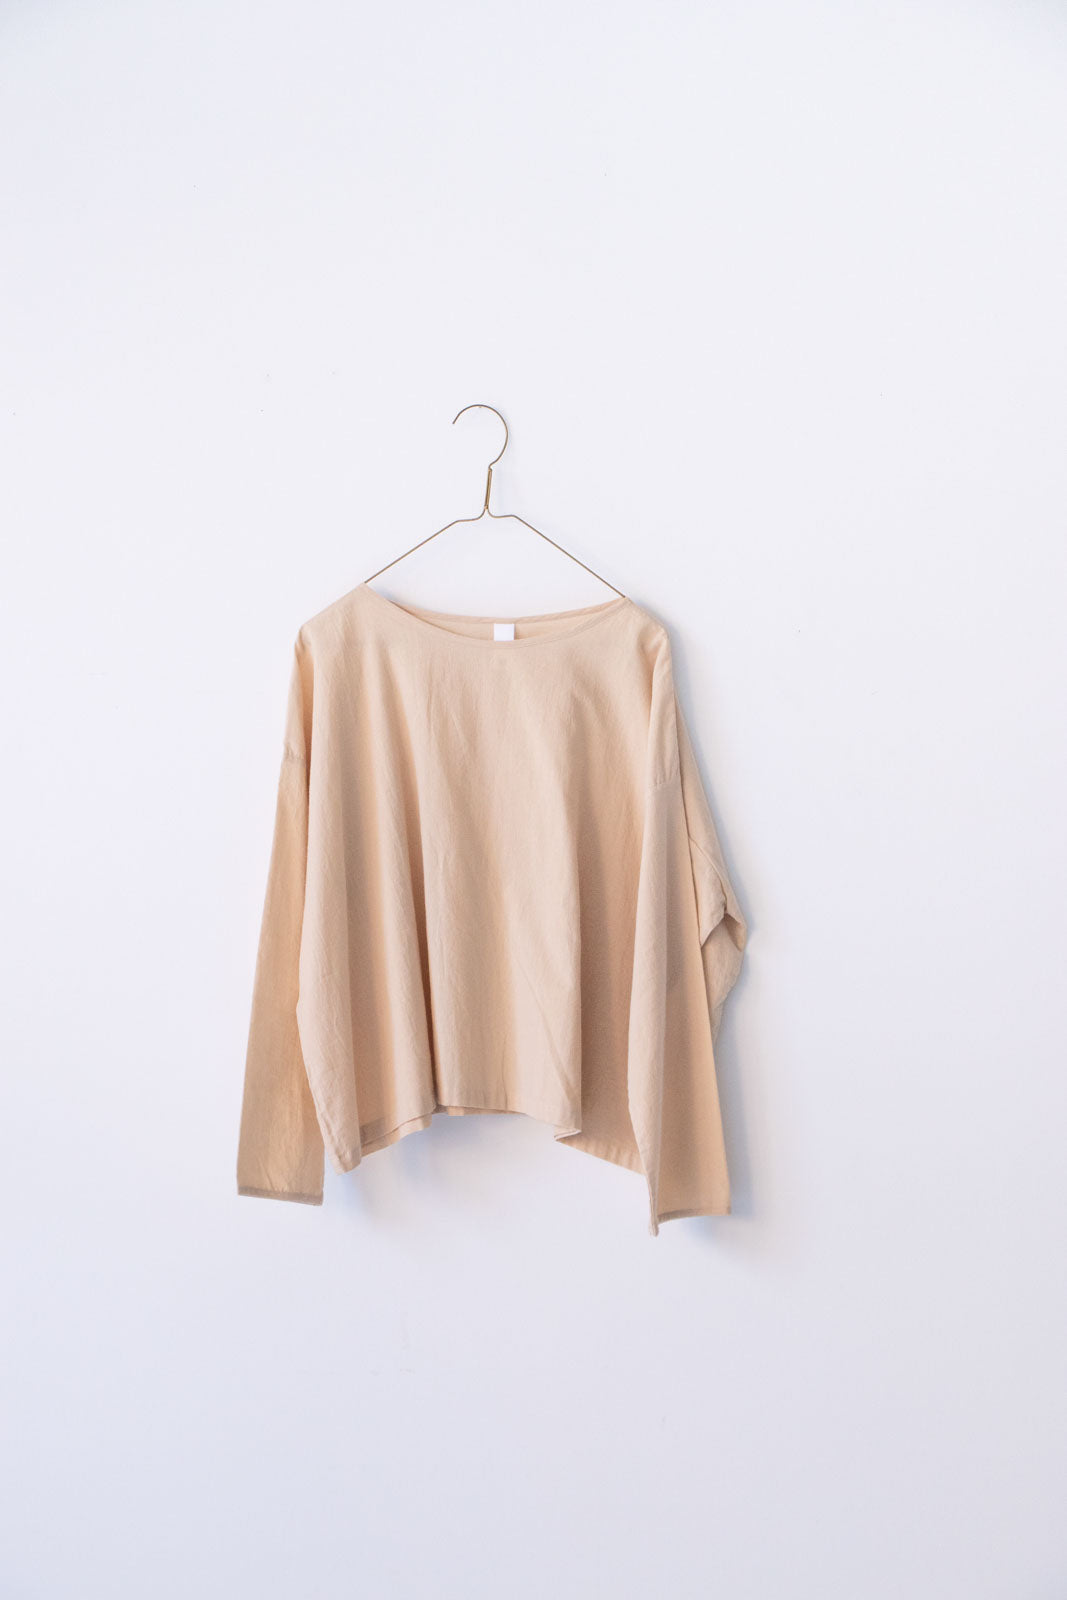 日本卸値Yoli Simple wide blouse beige 2023ss トップス